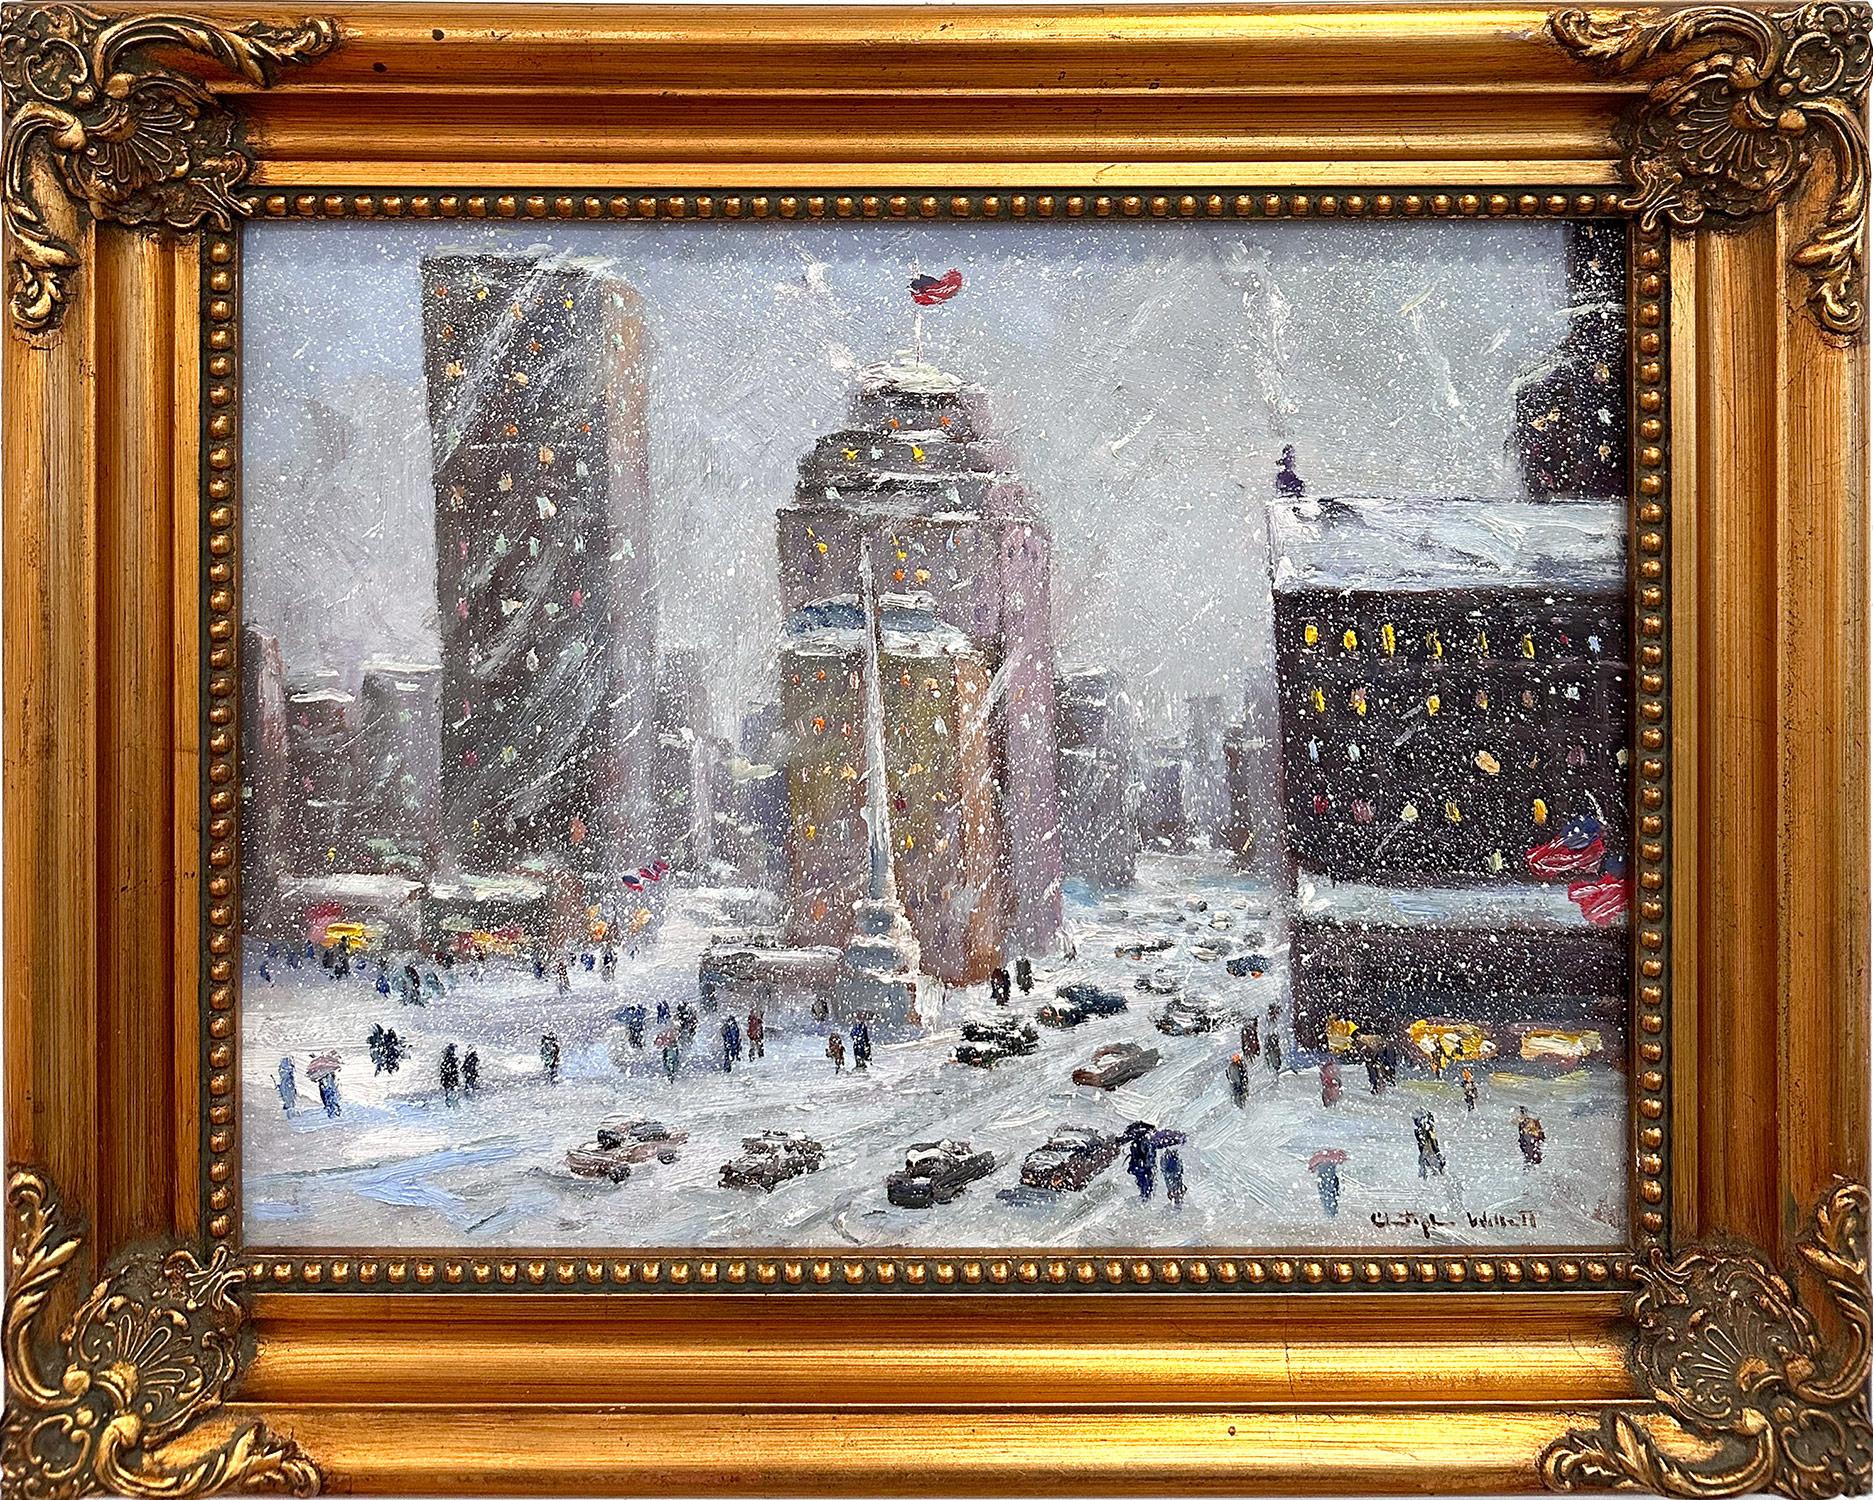 Christopher Willett Landscape Painting – "Columbus Circle New York City" Impressionistische Schneelandschaft Ölgemälde auf Karton